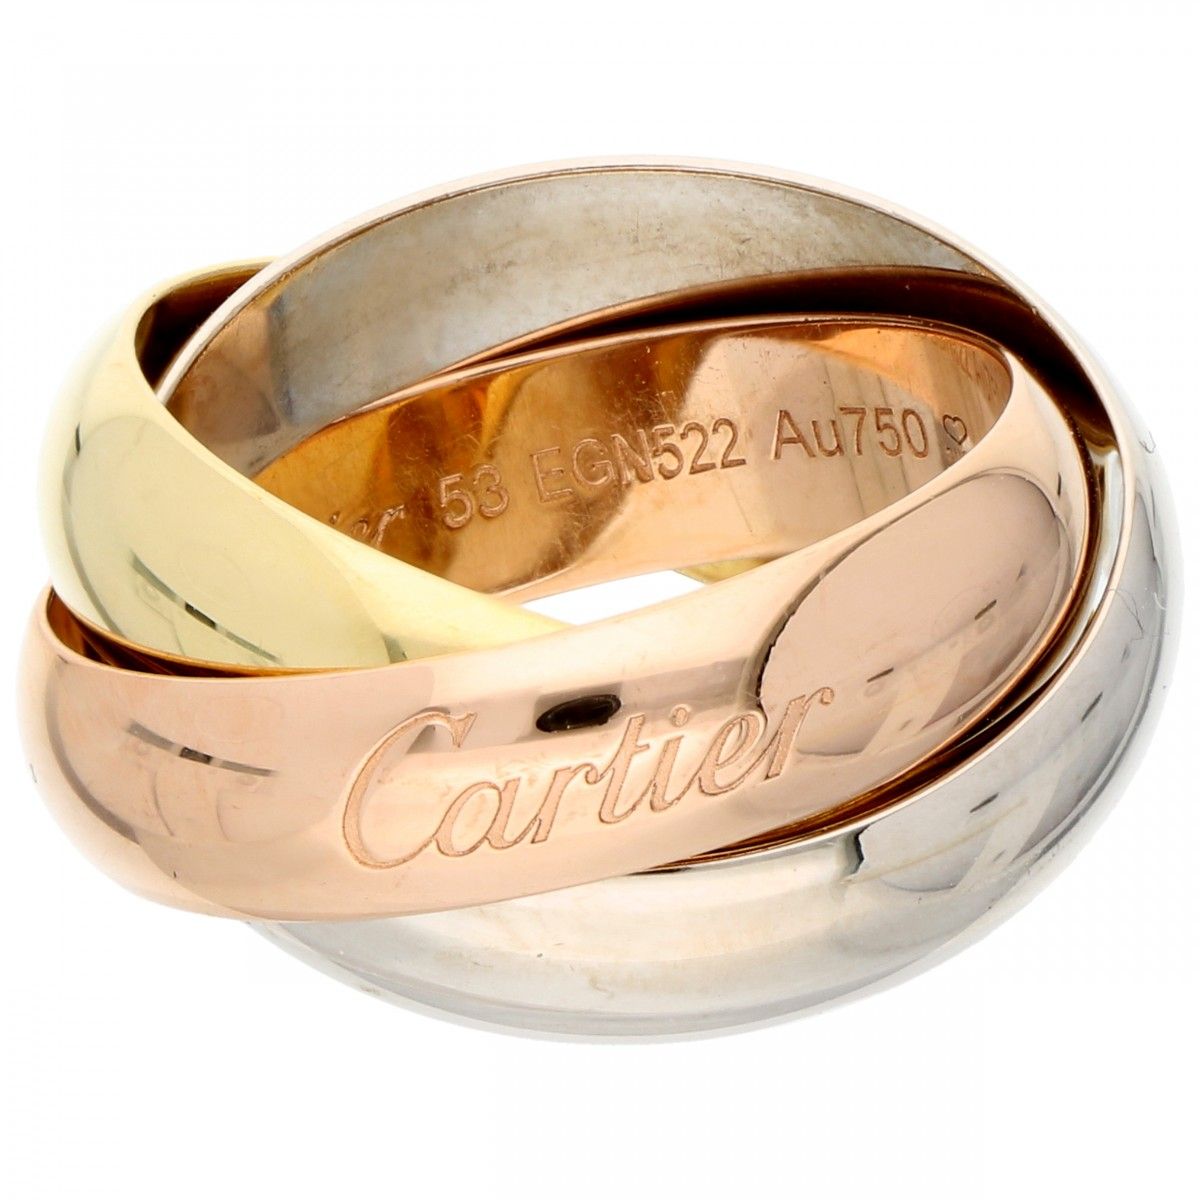 18K. Tricolor gold Cartier 'Trinity' ring. Seriennummer: 53 EGN522. Punzierungen&hellip;